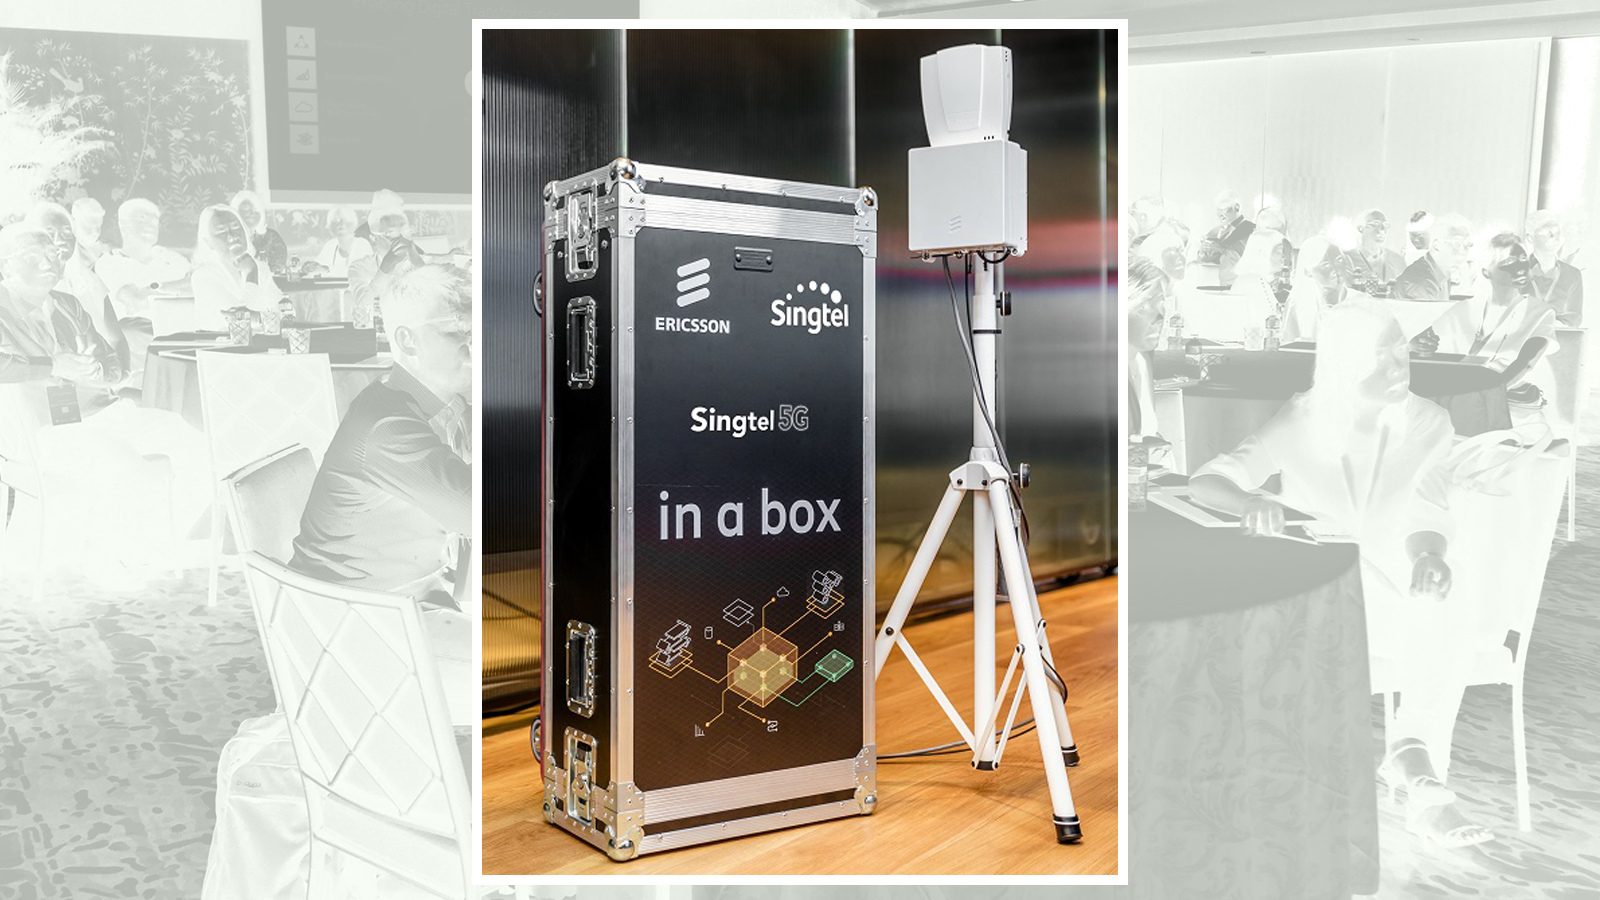 Singtel 5G in a box.